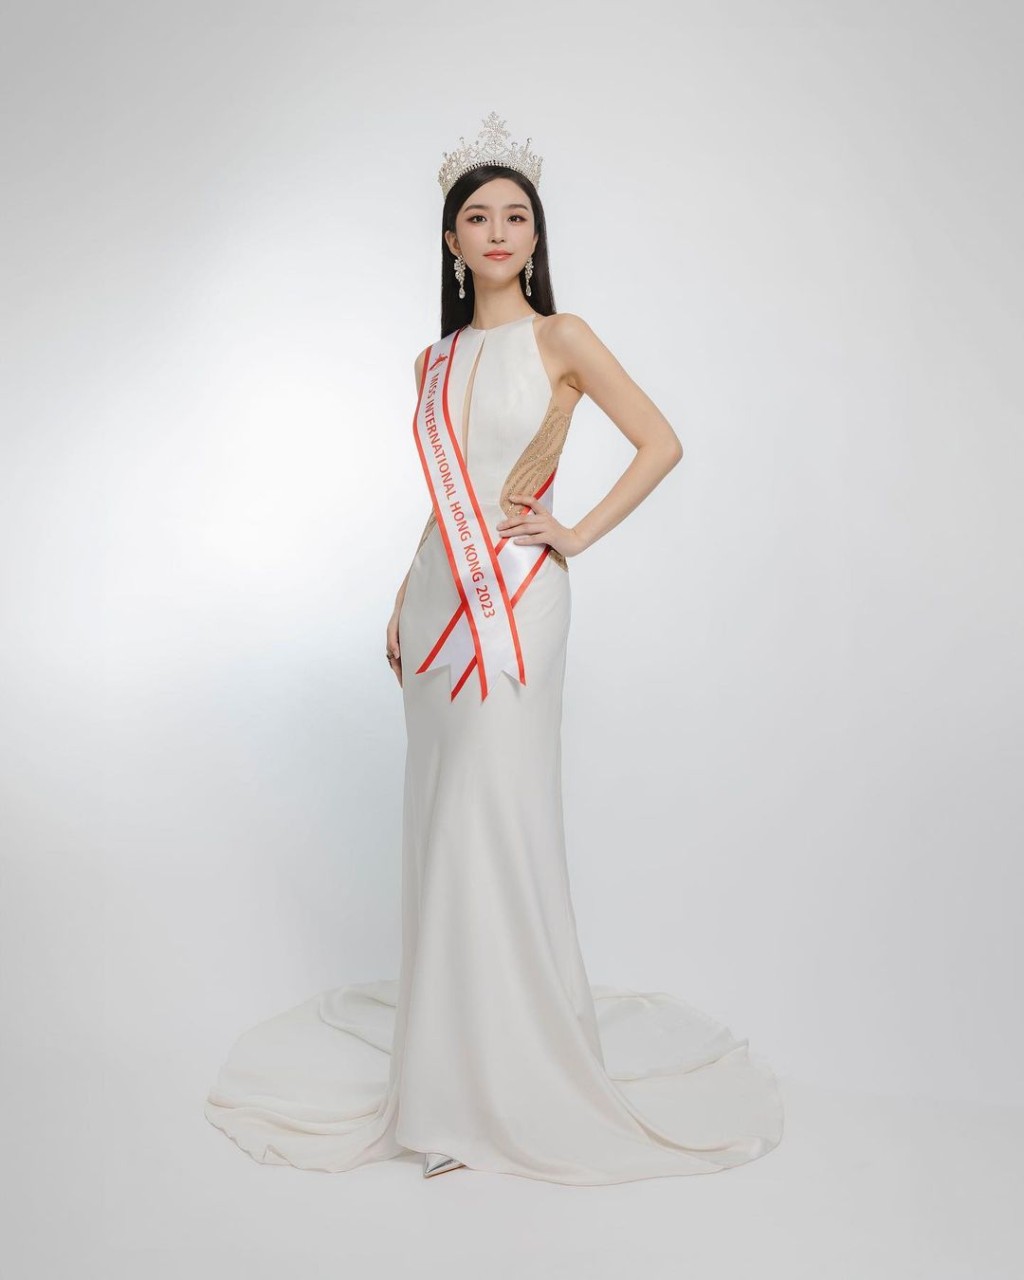 今年国际小姐竞选的香港代表，由26岁的梁庭欣（Verna Leung）成功夺得。